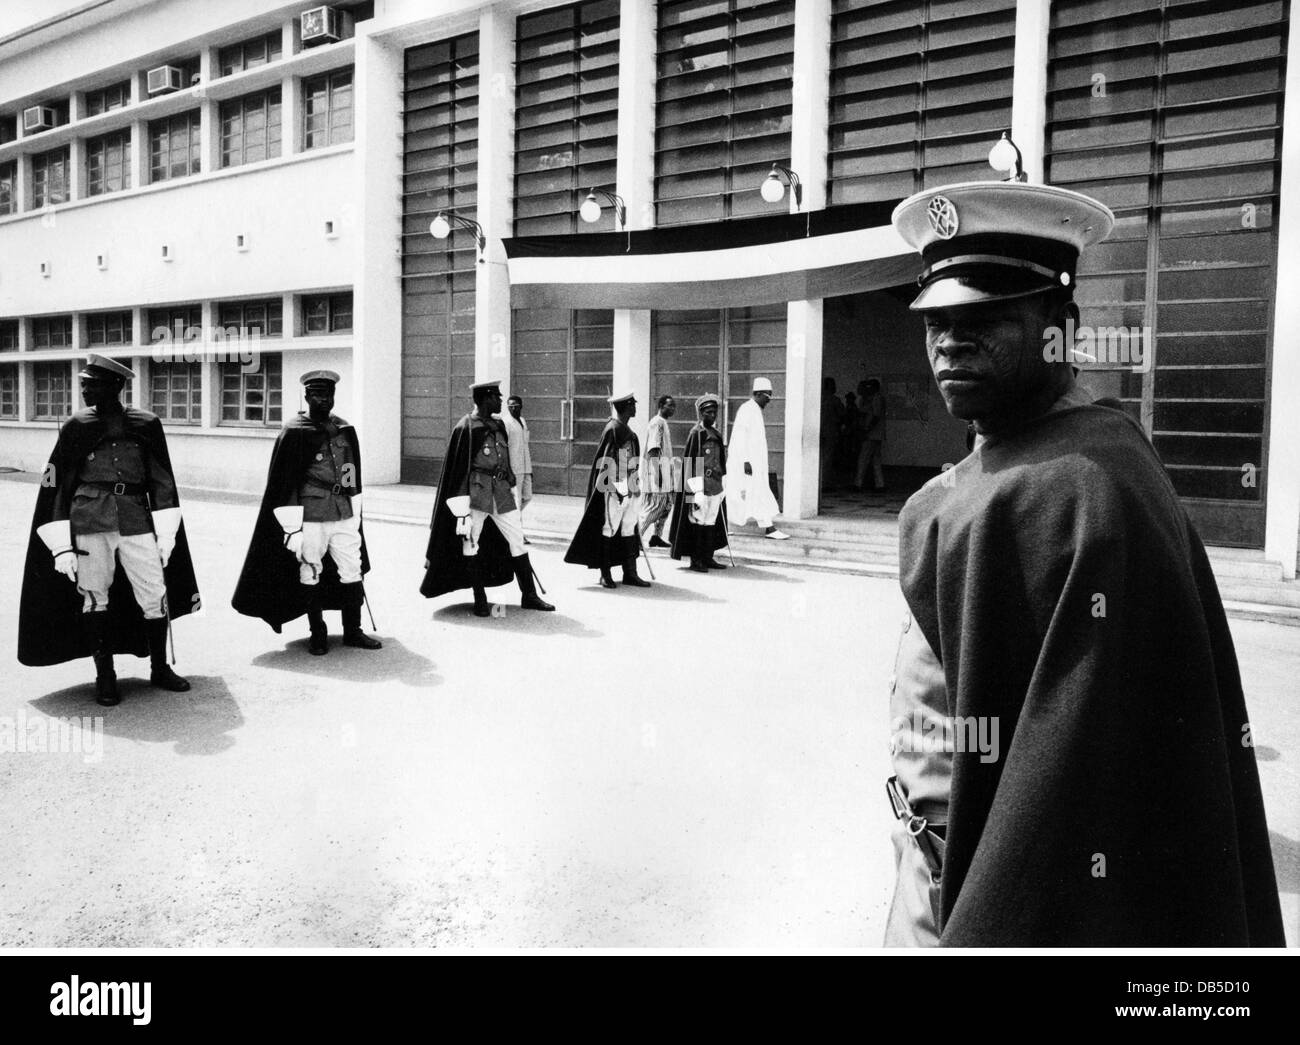 Géographie / Voyage, Burkina Faso, politique, gardes pendant l'ouverture du Parlement, Ouagadougou, années 1960, droits additionnels-Clearences-non disponible Banque D'Images